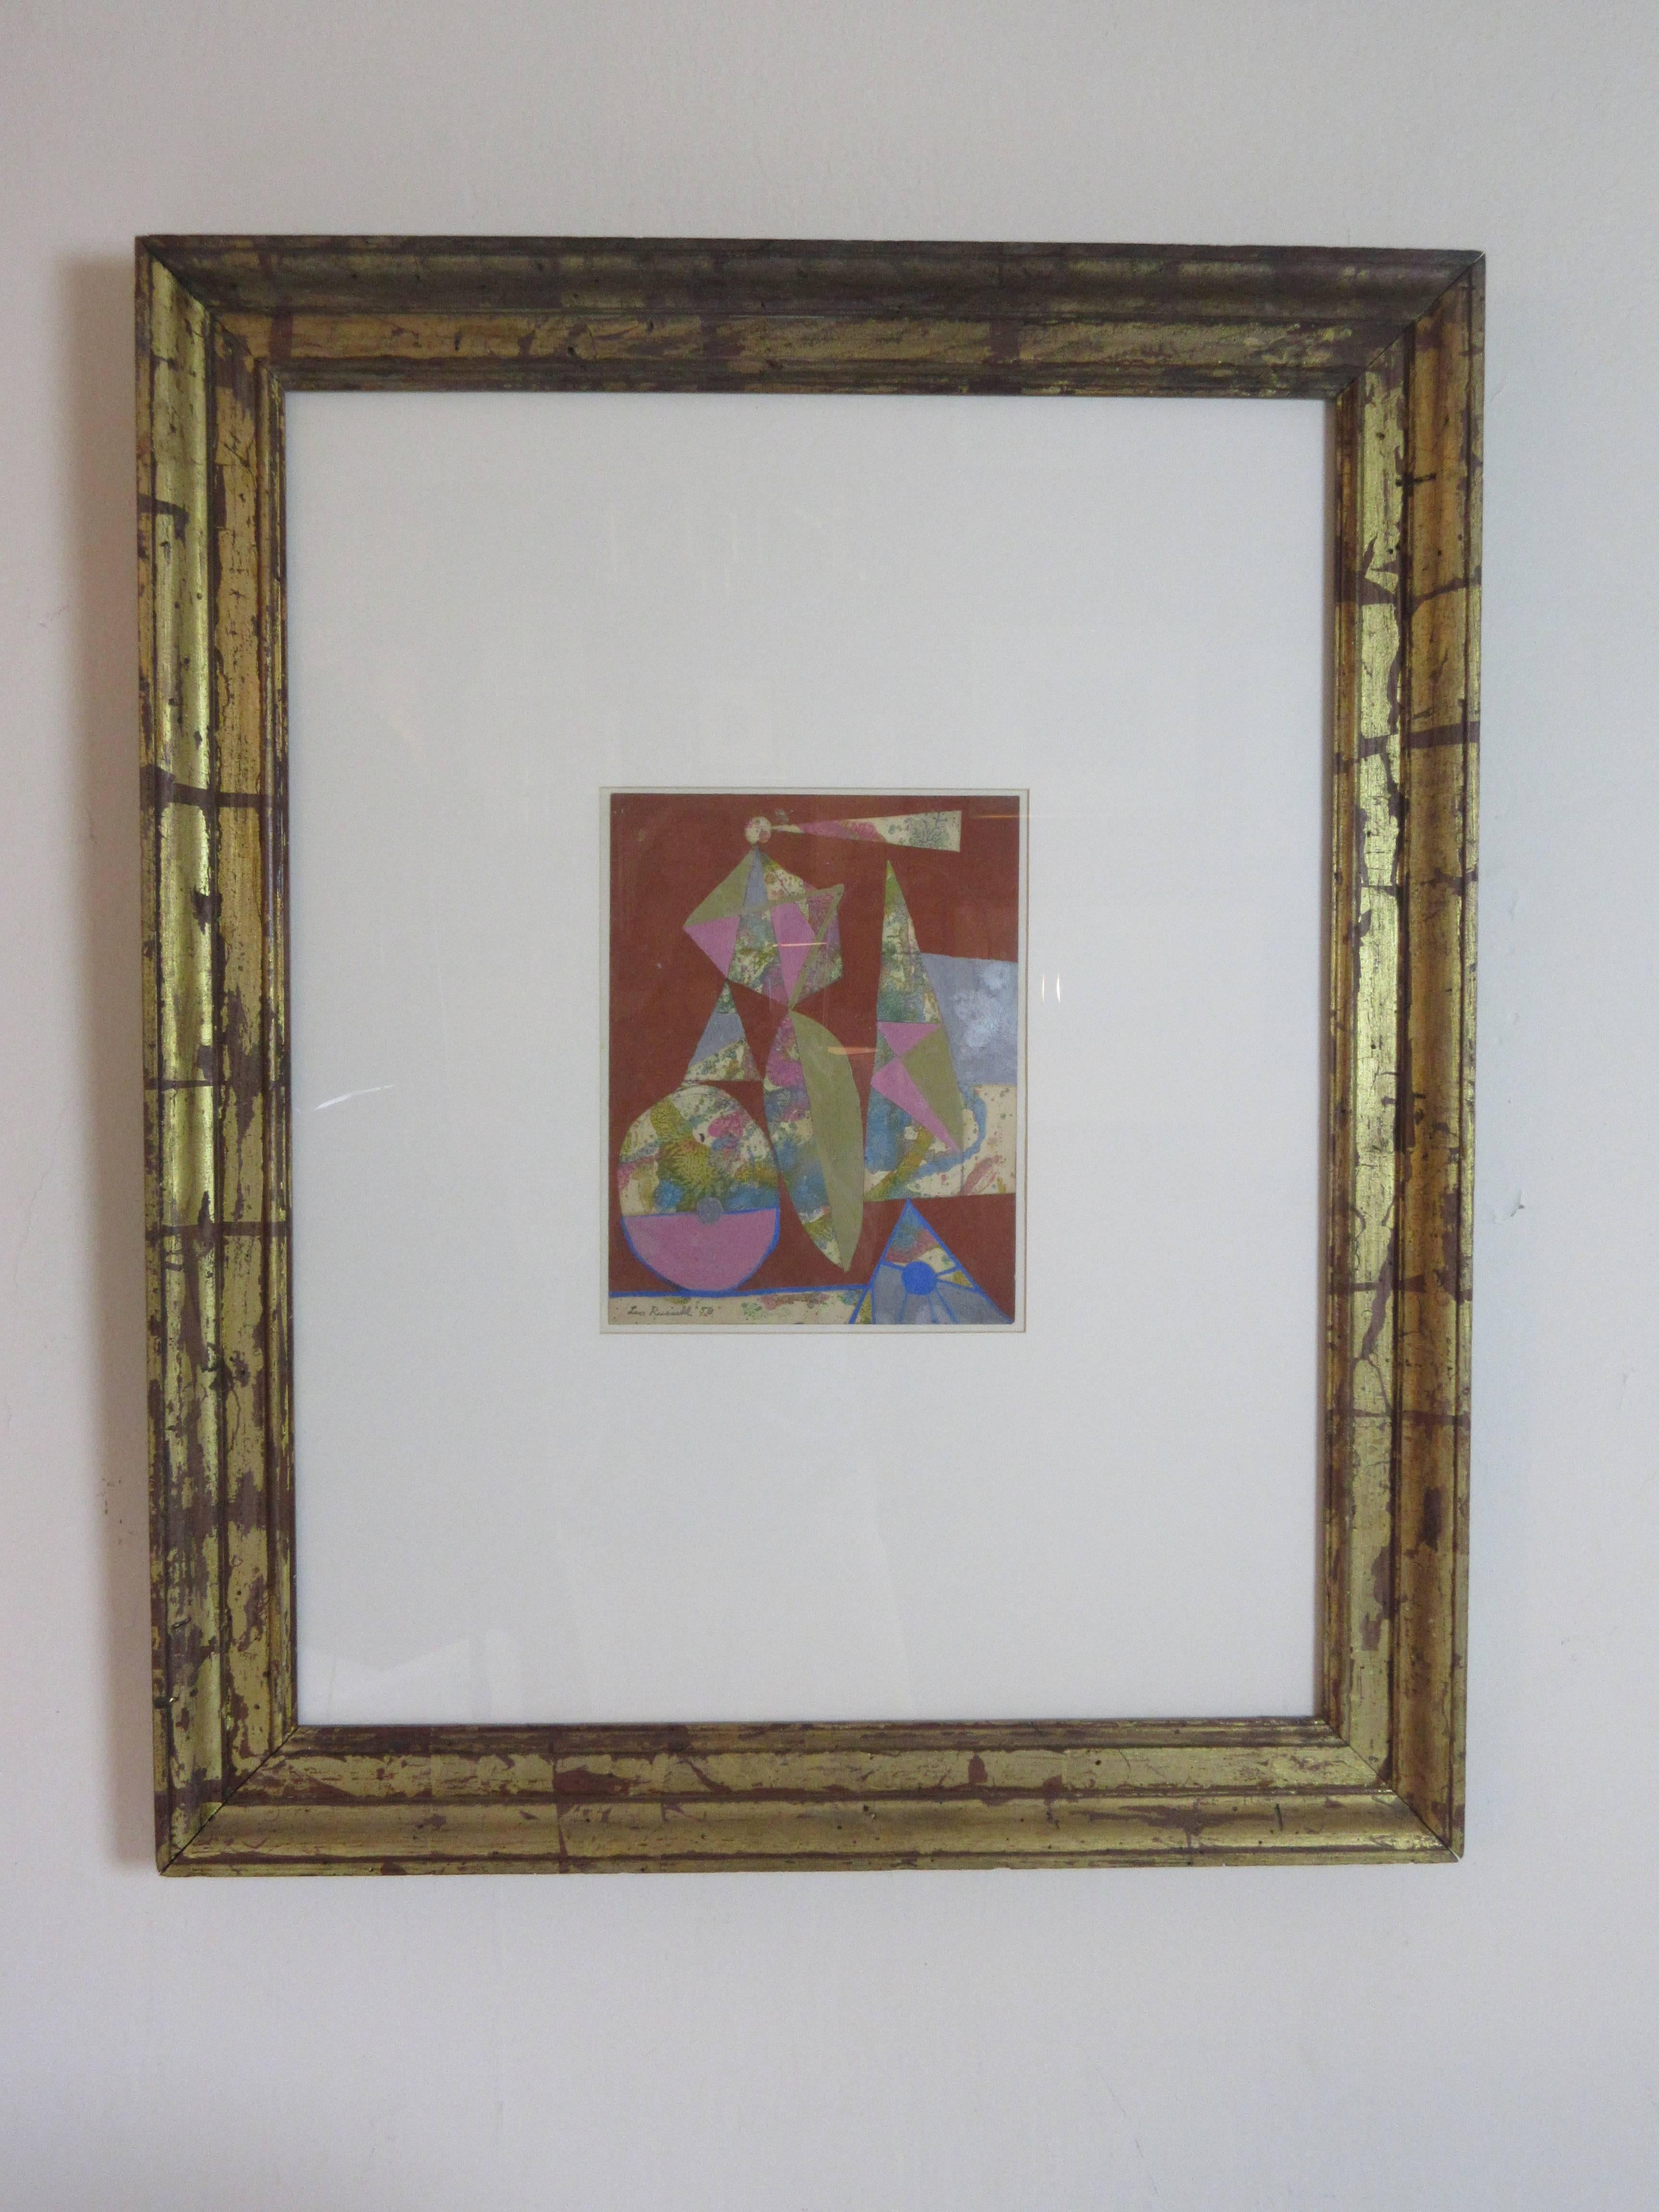 Leo Russel Gouache 1956. Formes organiques abstraites sur papier encadrées dans une feuille d'or vieillie et sous verre. L'image est de format 8,5 x 11. Le cadre est de 26,5 x 33.